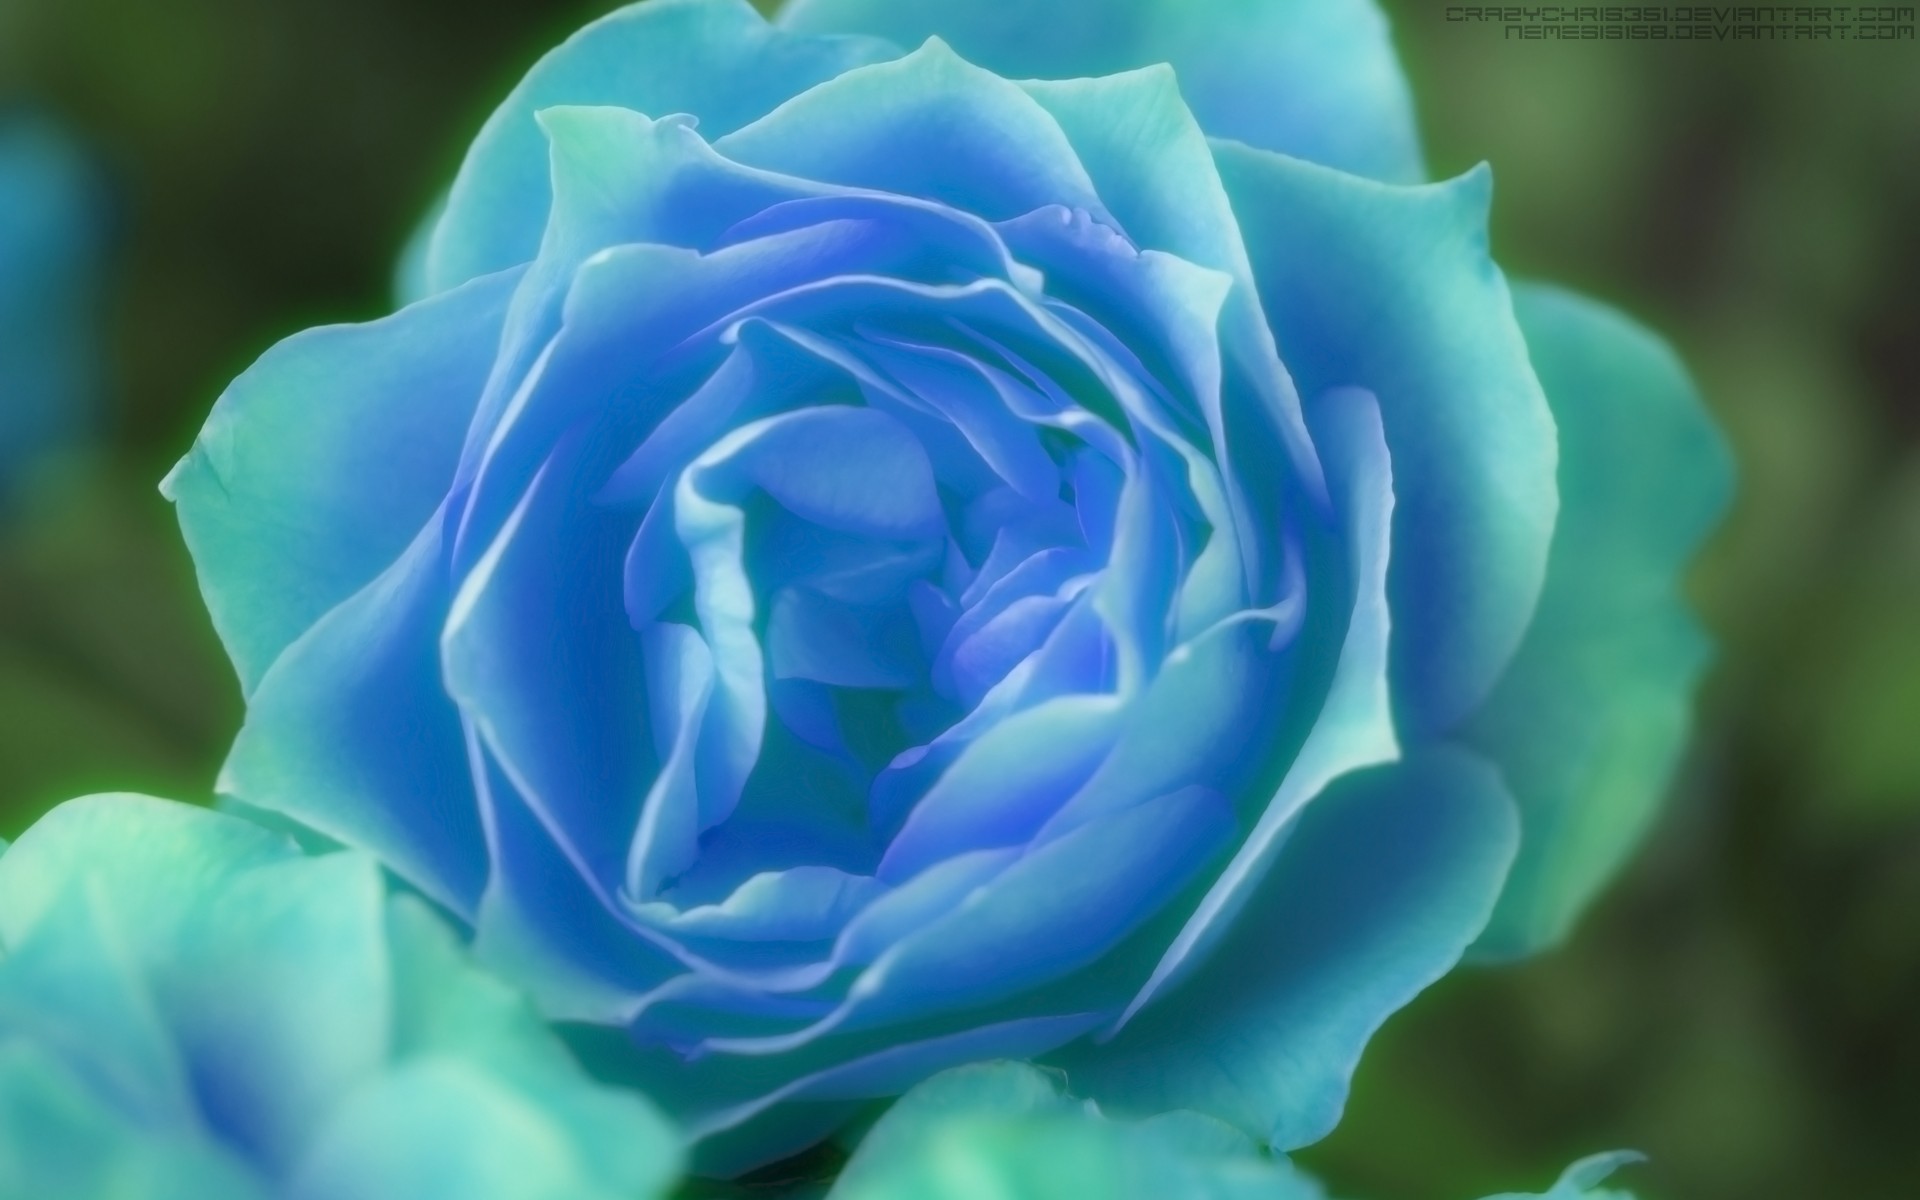 rose, blue rose, blue flower, artistic Full HD